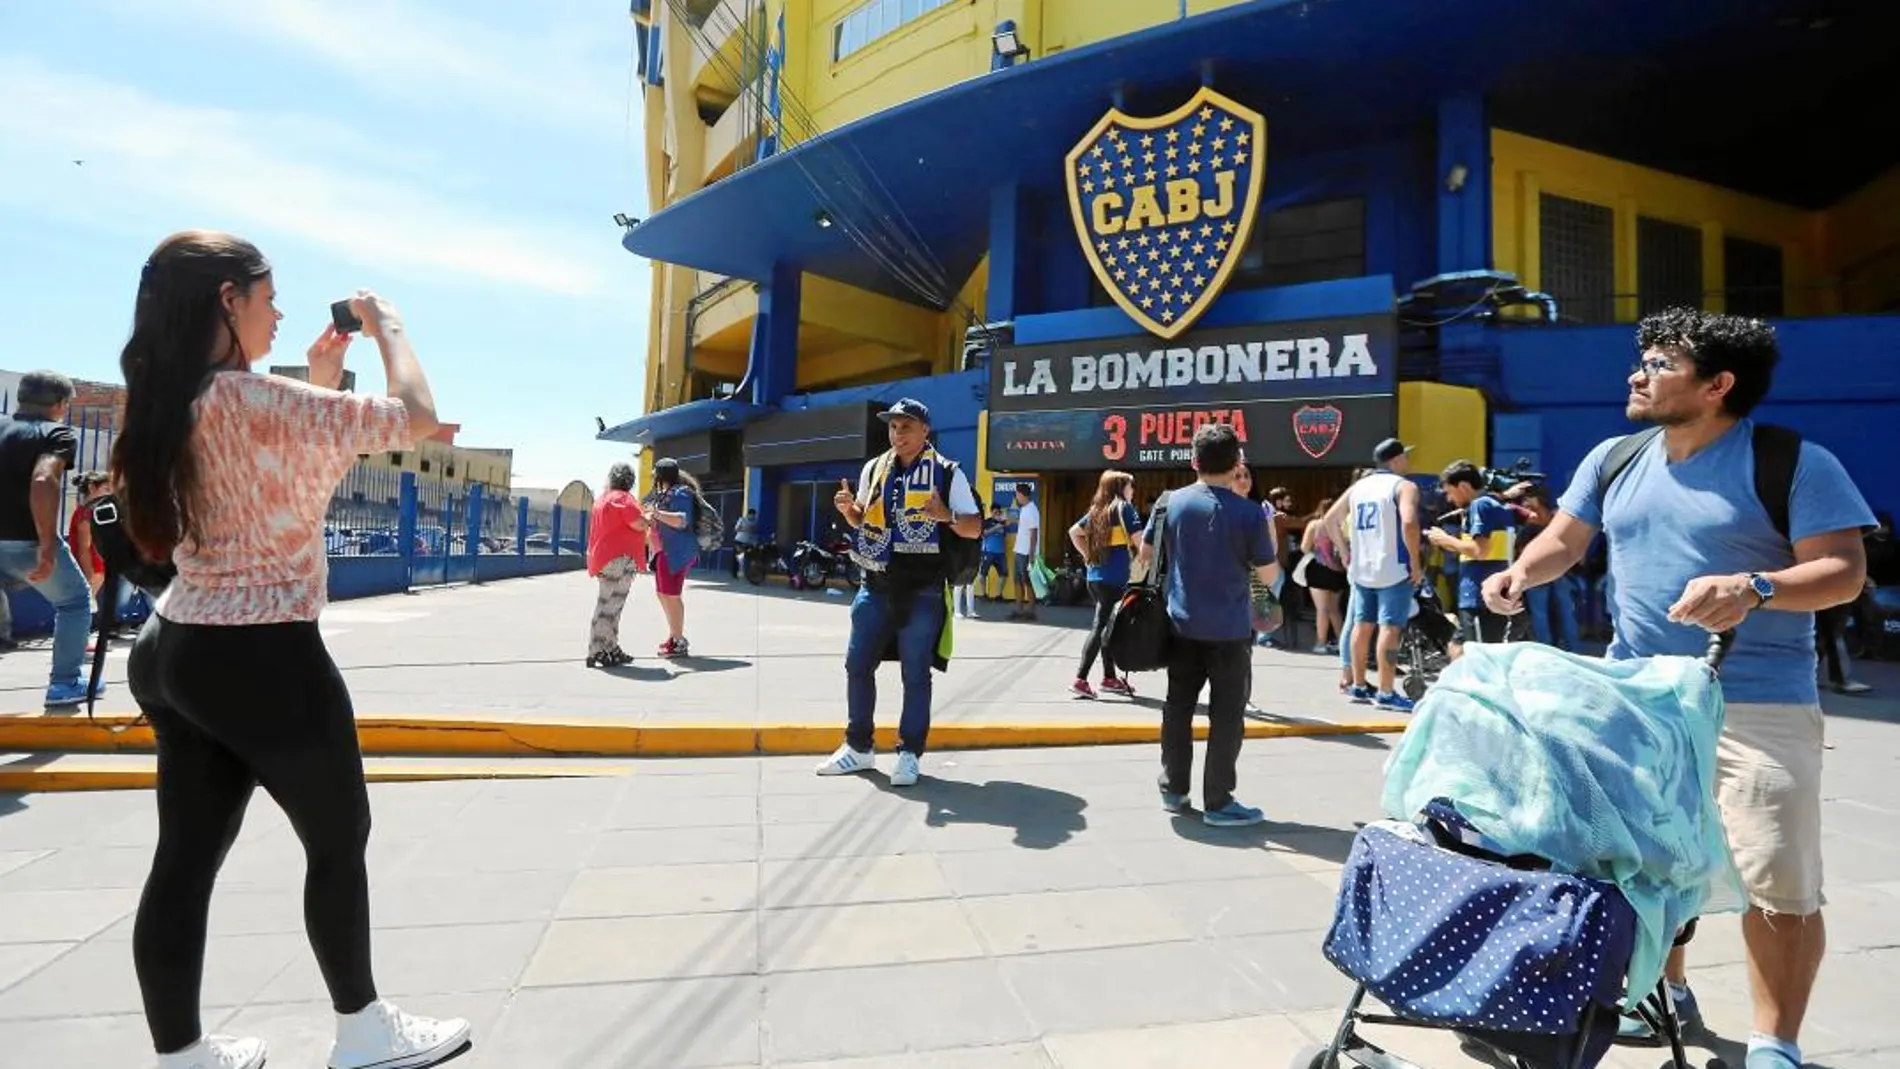 Calma antes de la tempestad en la puerta de La Bombonera. Hoy, el estadio de Boca se convertirá en el centro del mundo futbolísticoBBomb